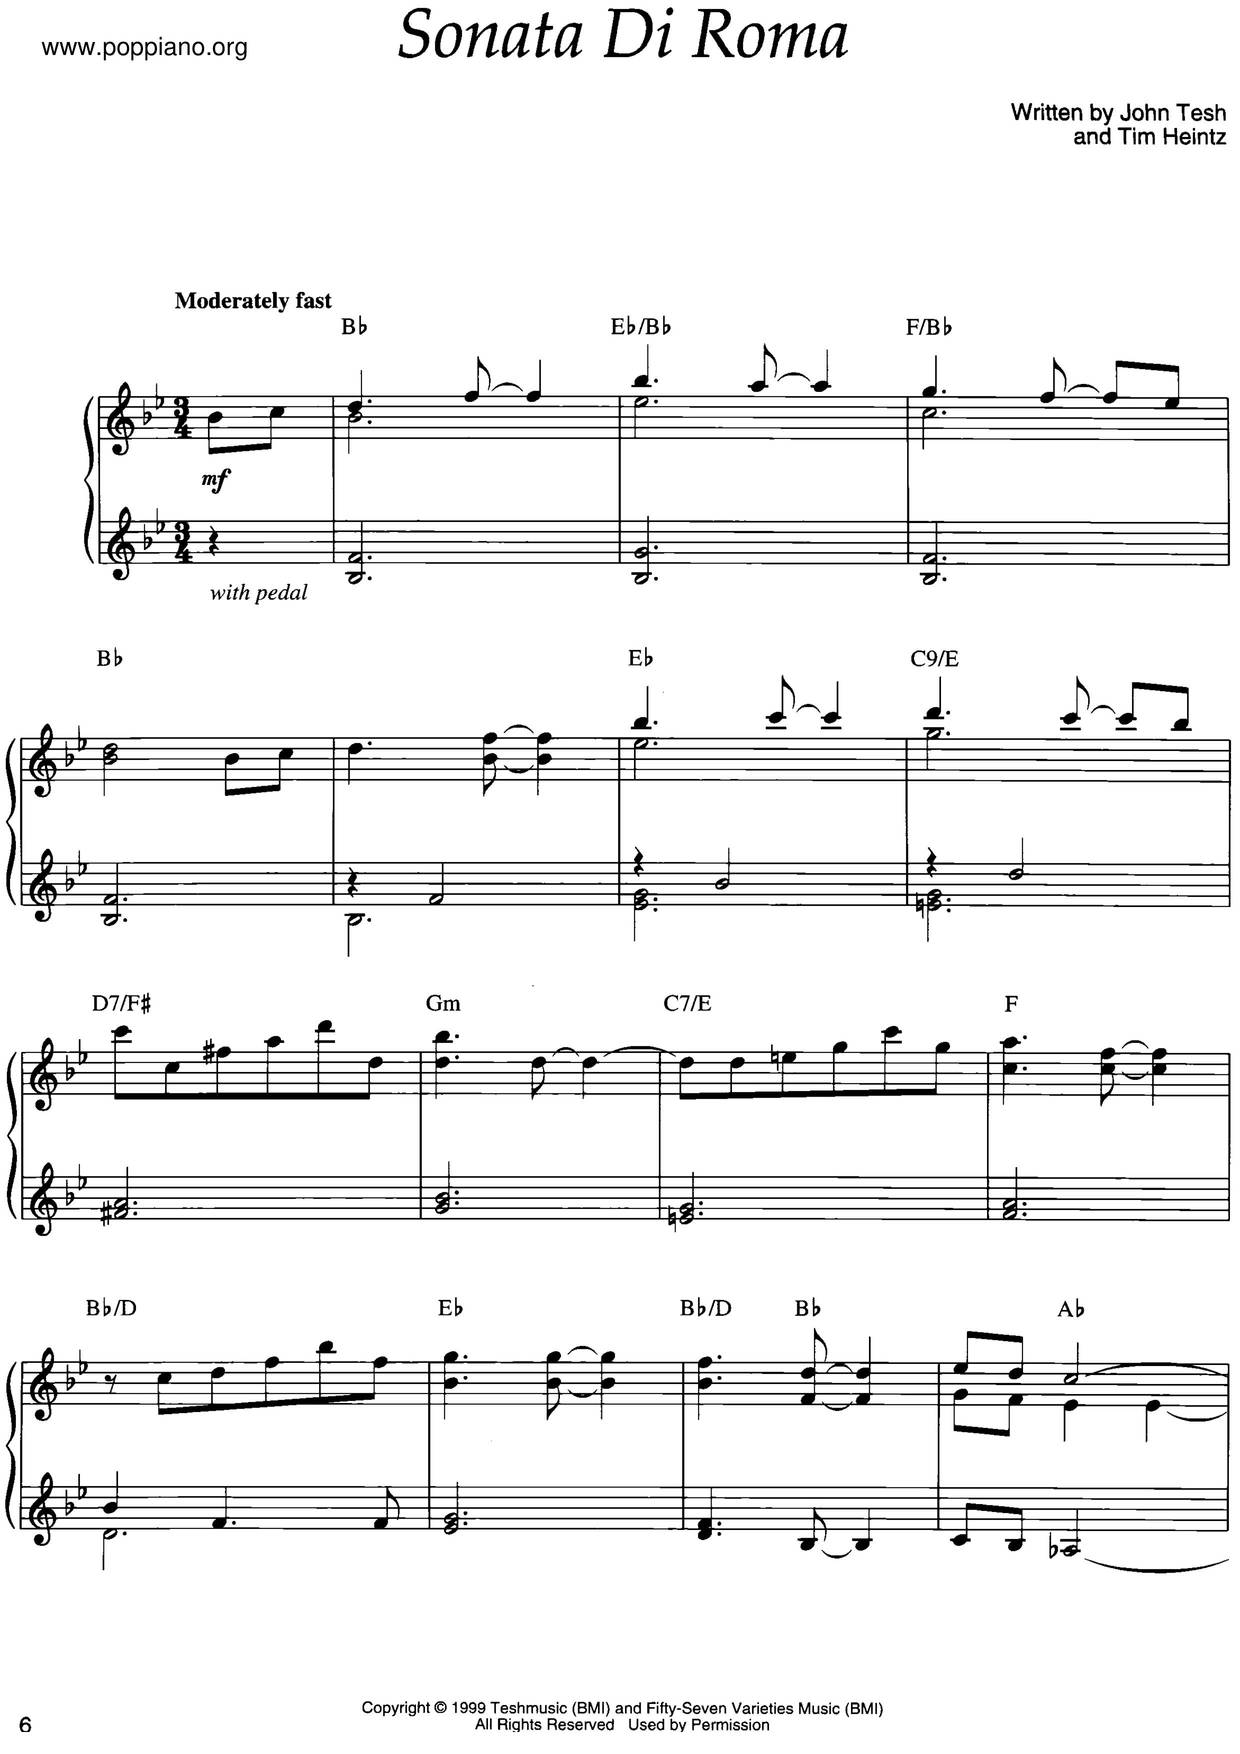 Sonata Di Roma Score